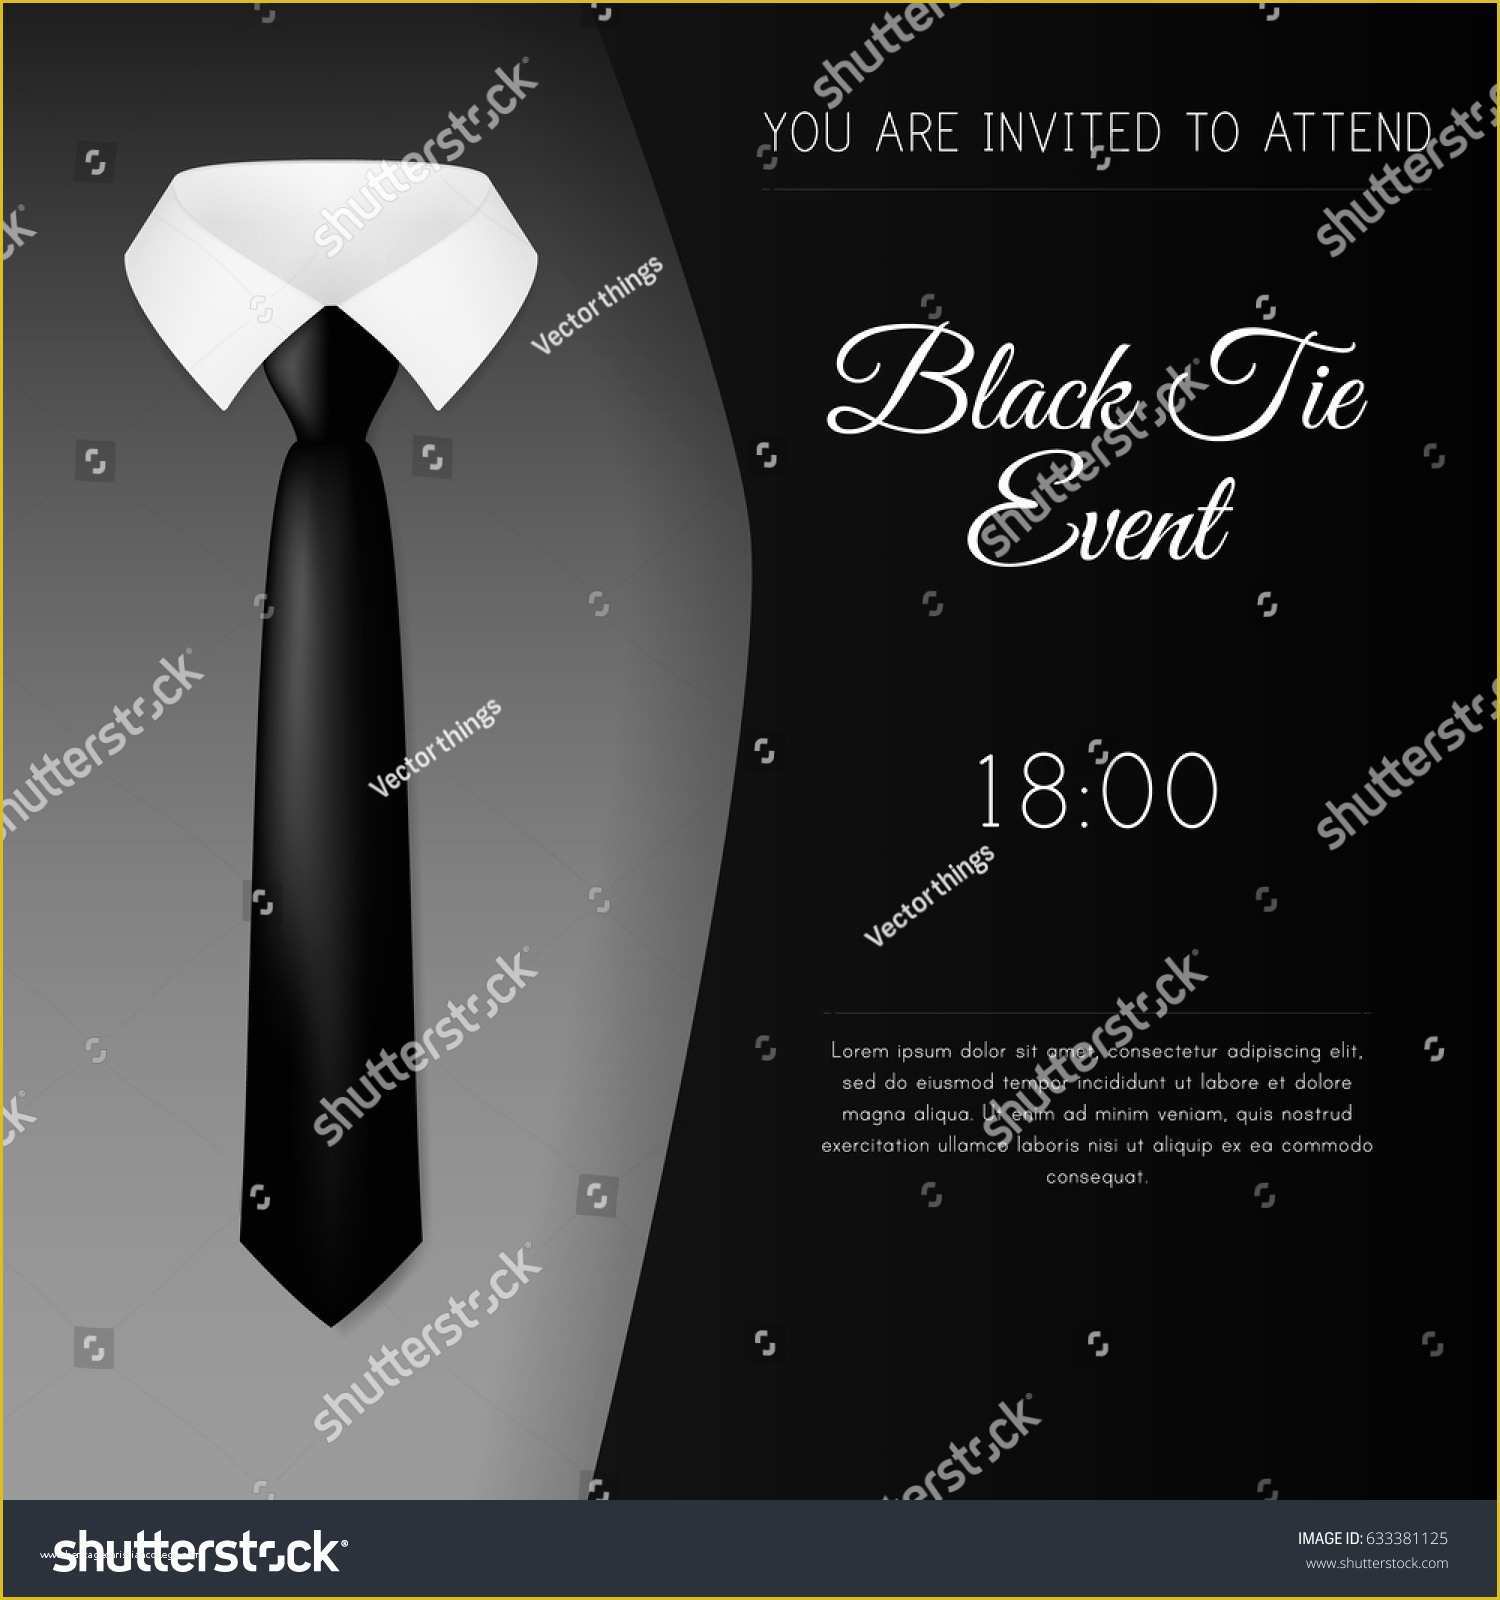 black-tie-event-invitation-free-template-of-elegant-black-tie-event